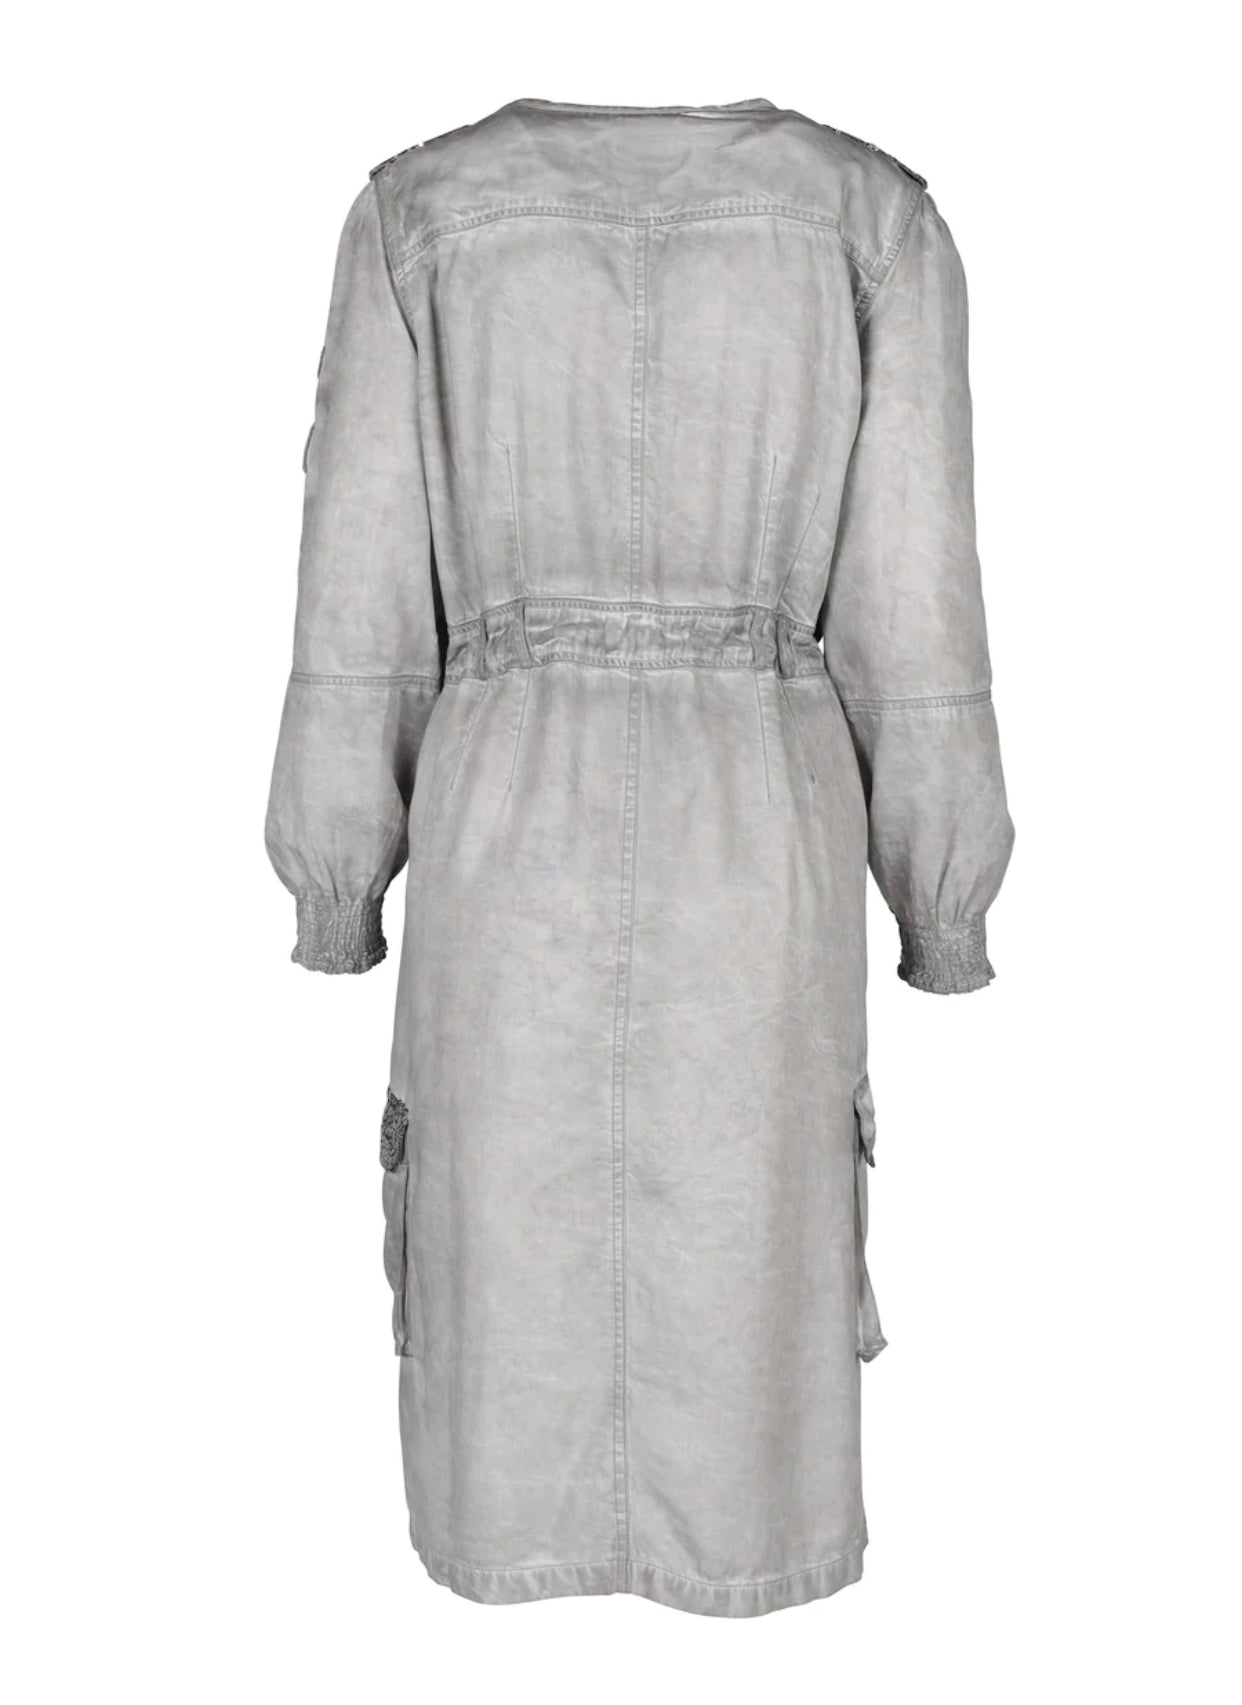 Long Sleeve Terra Dress in Kit